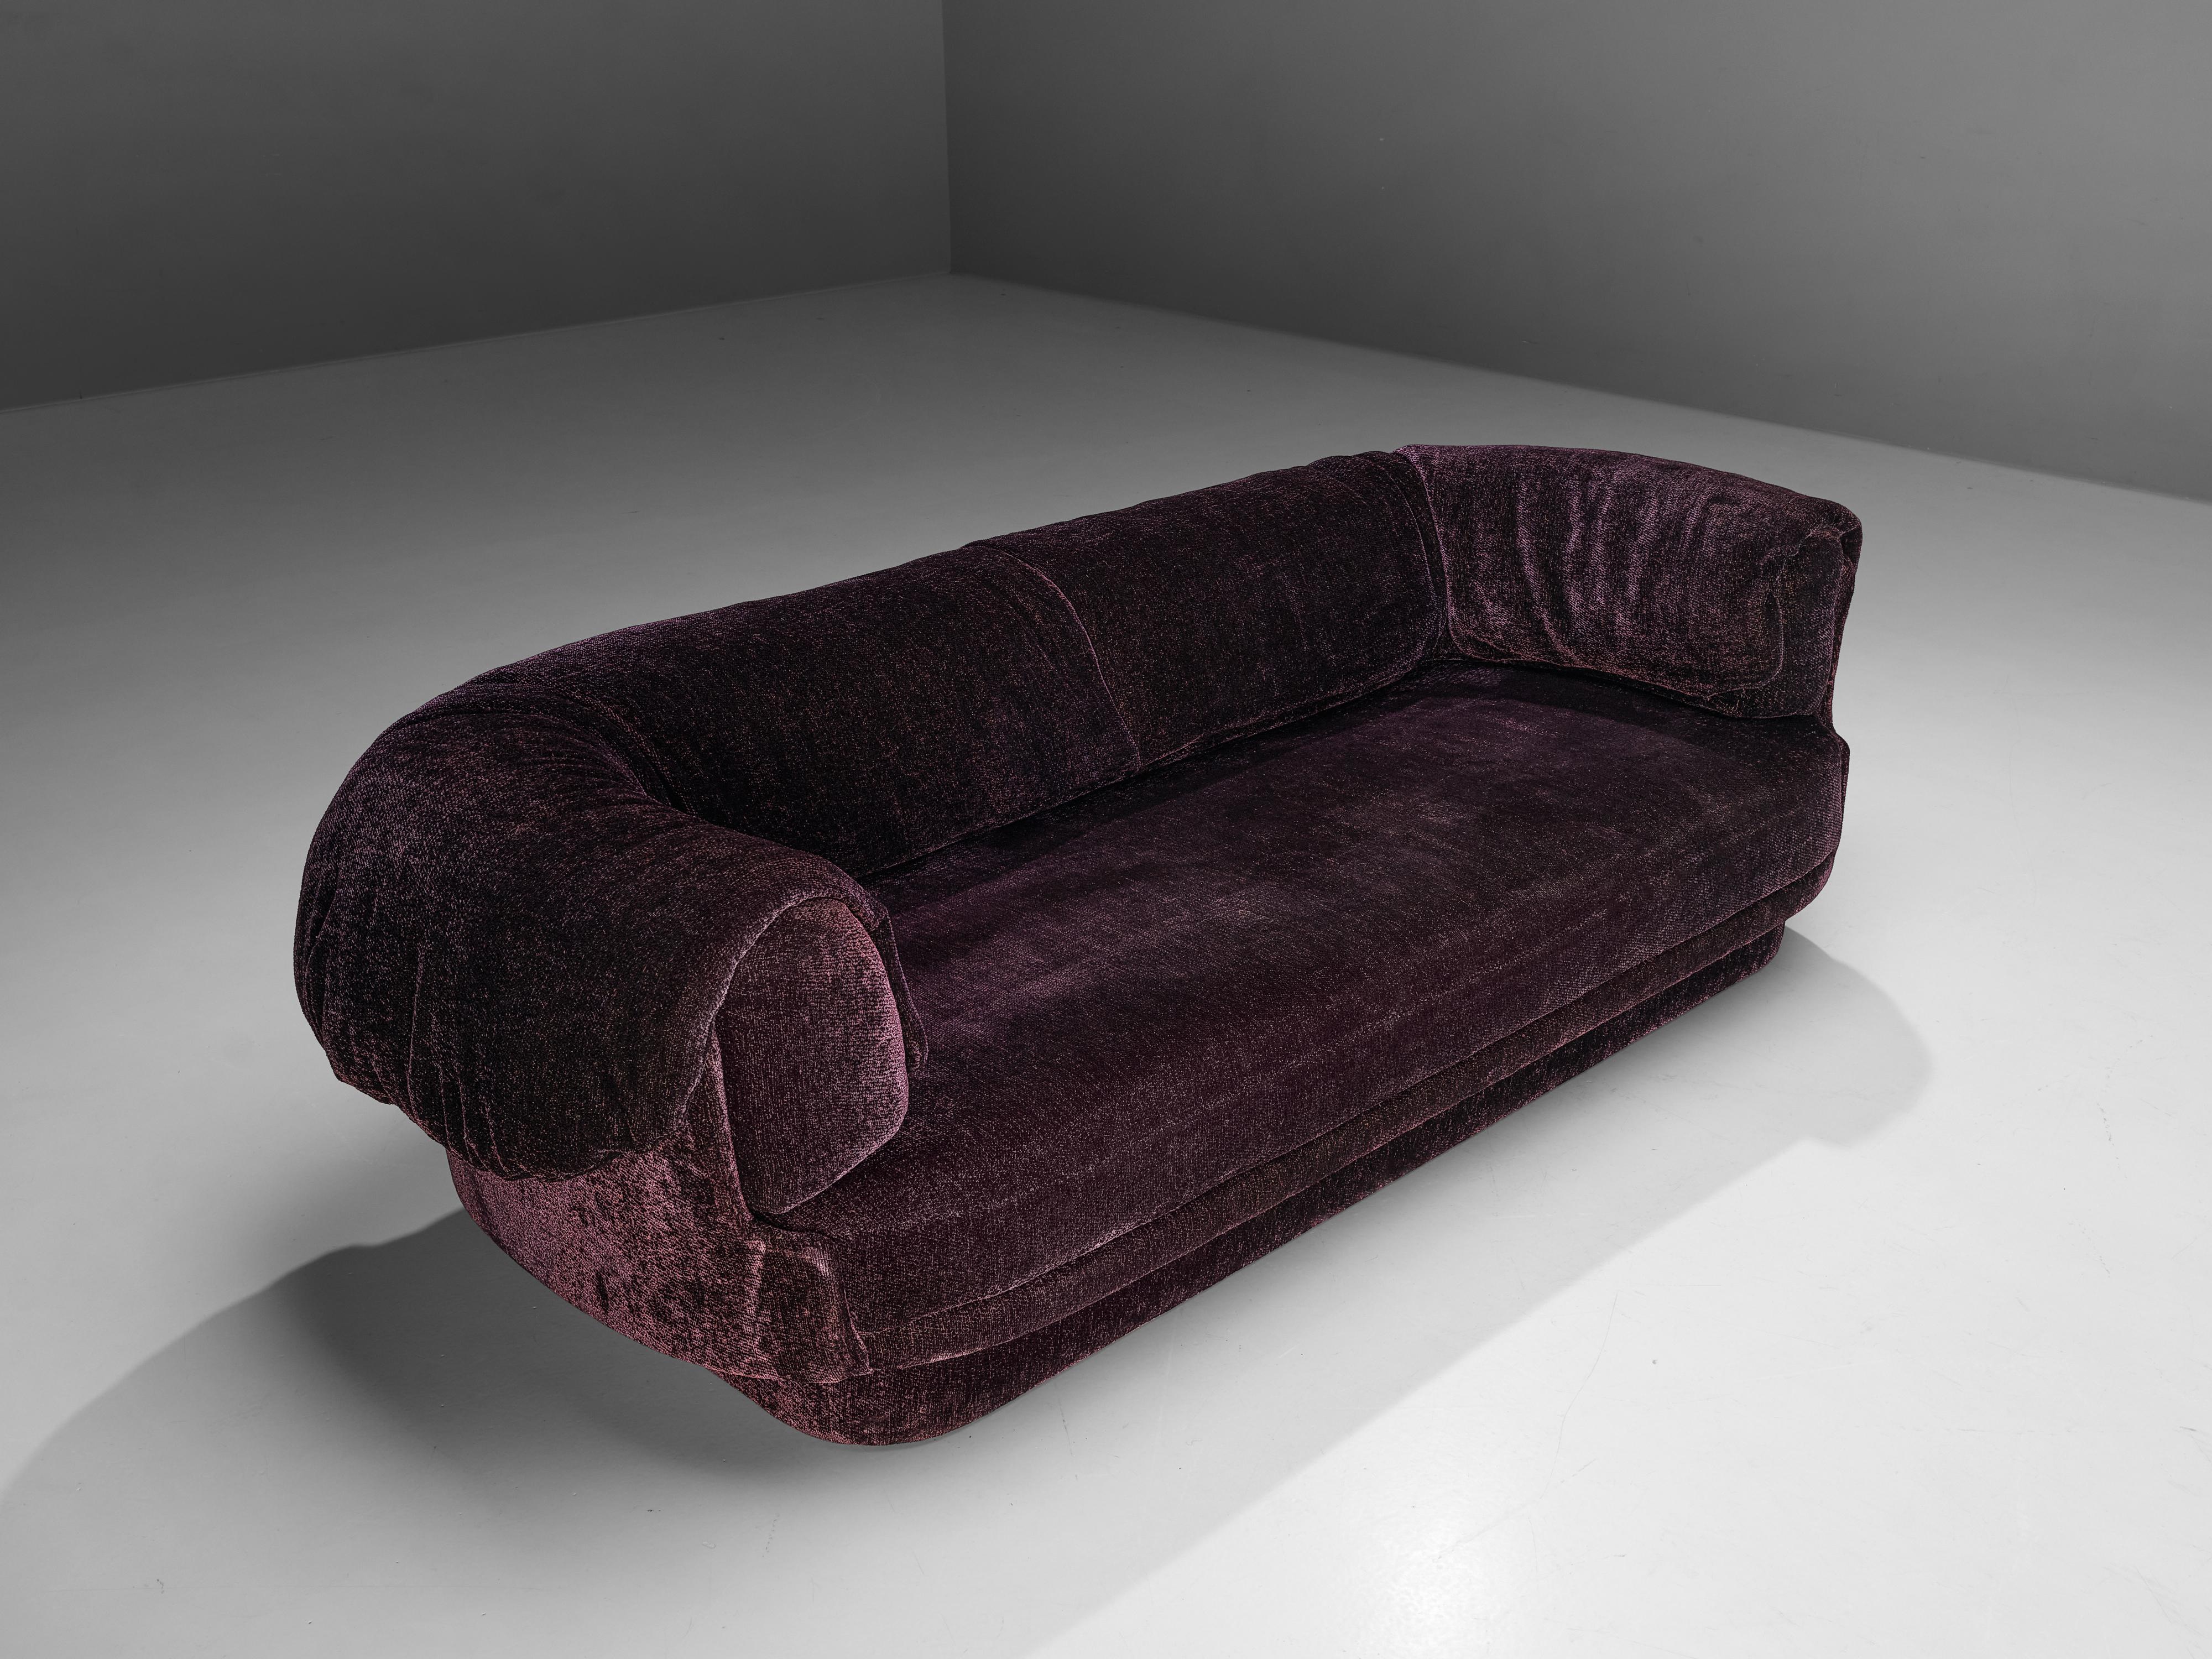 Howard Keith, Sofa, Stoff, Vereinigtes Königreich, 1970er Jahre

Großes, üppiges Sofa von Howard Keith, entworfen in den 1970er Jahren. Dieses Sofa mit tiefer Sitzfläche ist ein wahrer Genuss zum Sitzen und Entspannen. Die dicken Armlehnen, die